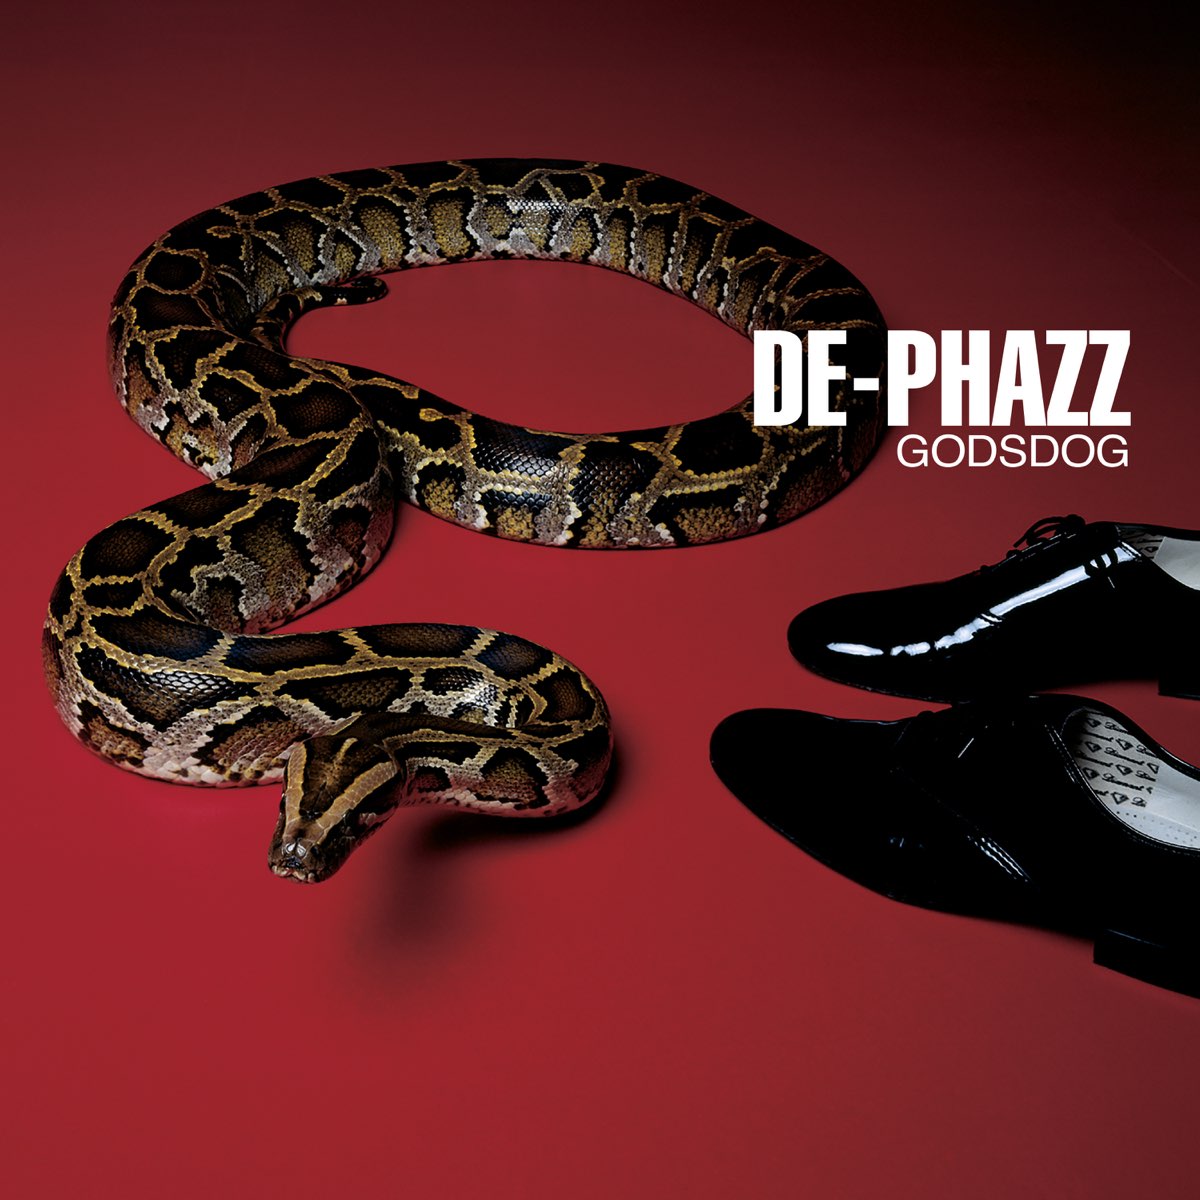 Godsdog - второй студийный альбом электронной группы De-Phazz. Он был выпущен в 1999 году.